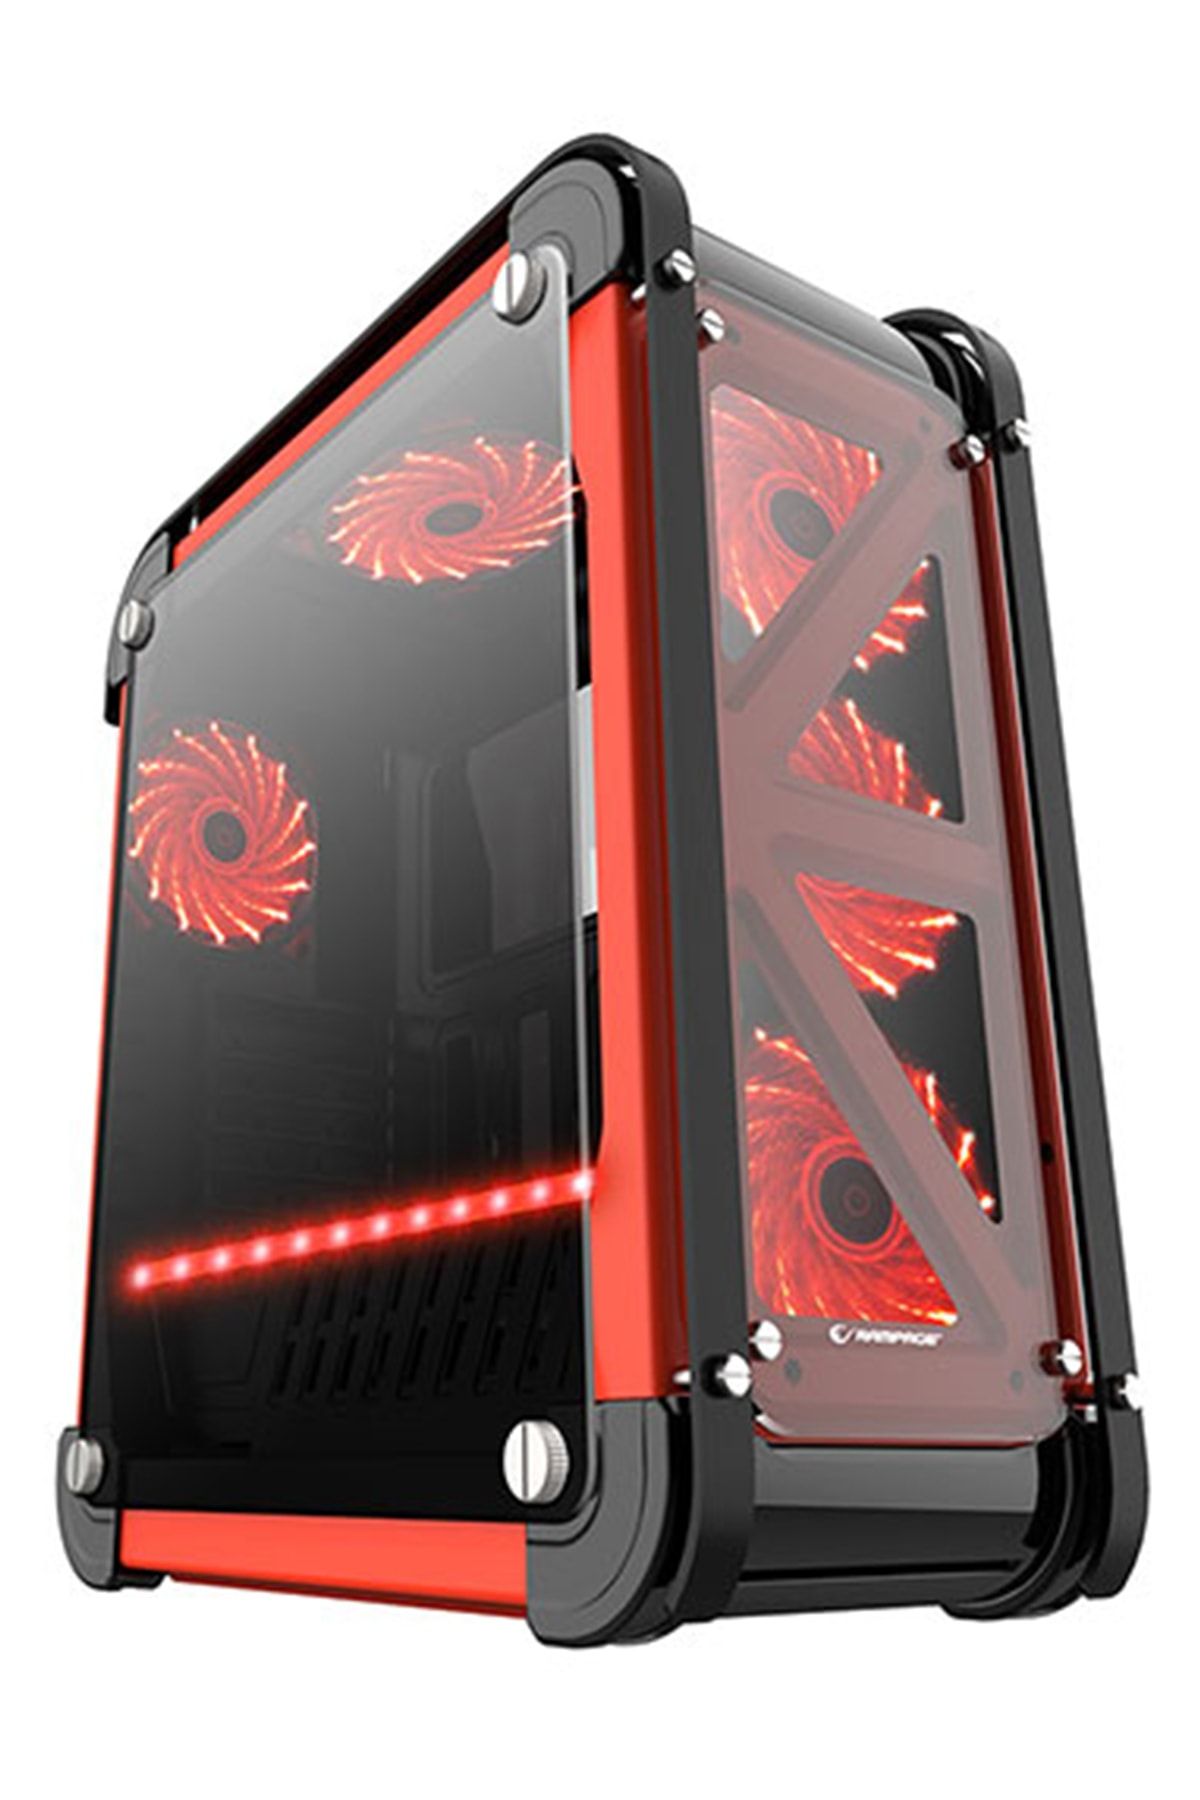 Rampage Castle Siyah/kırmızı 4*12cm Rgb Fan Led Şeritli Temper Glass Çelik Gövdeli Oyuncu Kasa